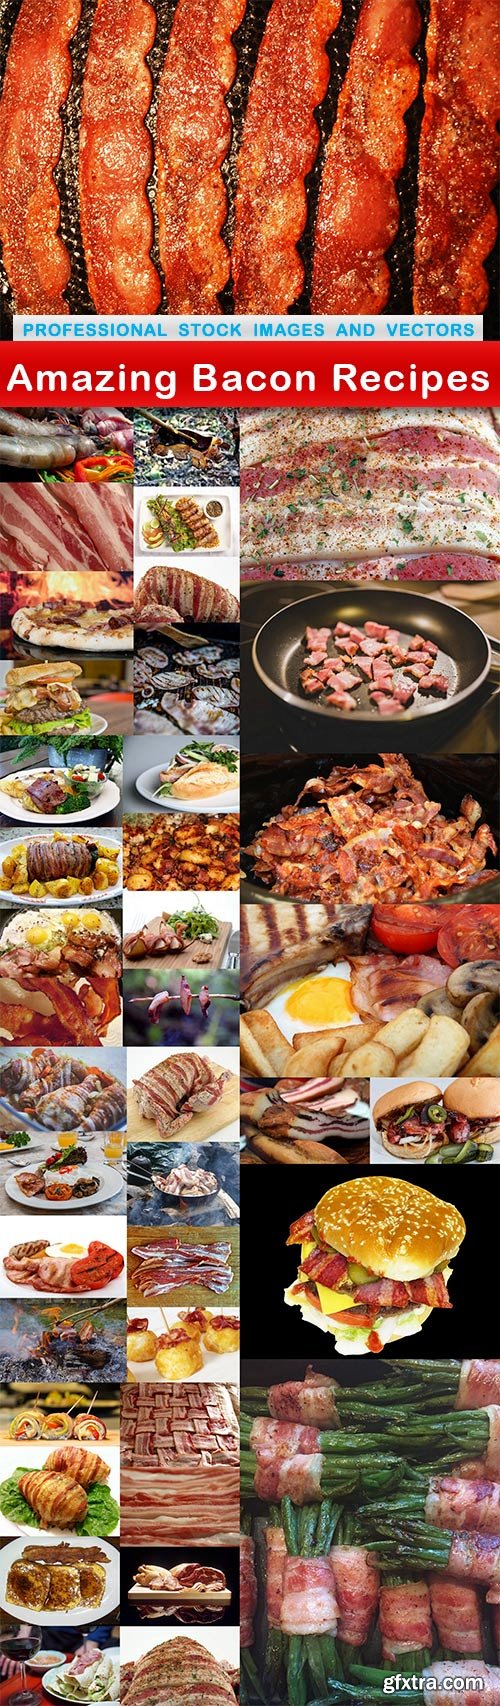 Amazing Bacon Recipes - 41 UHQ JPEG